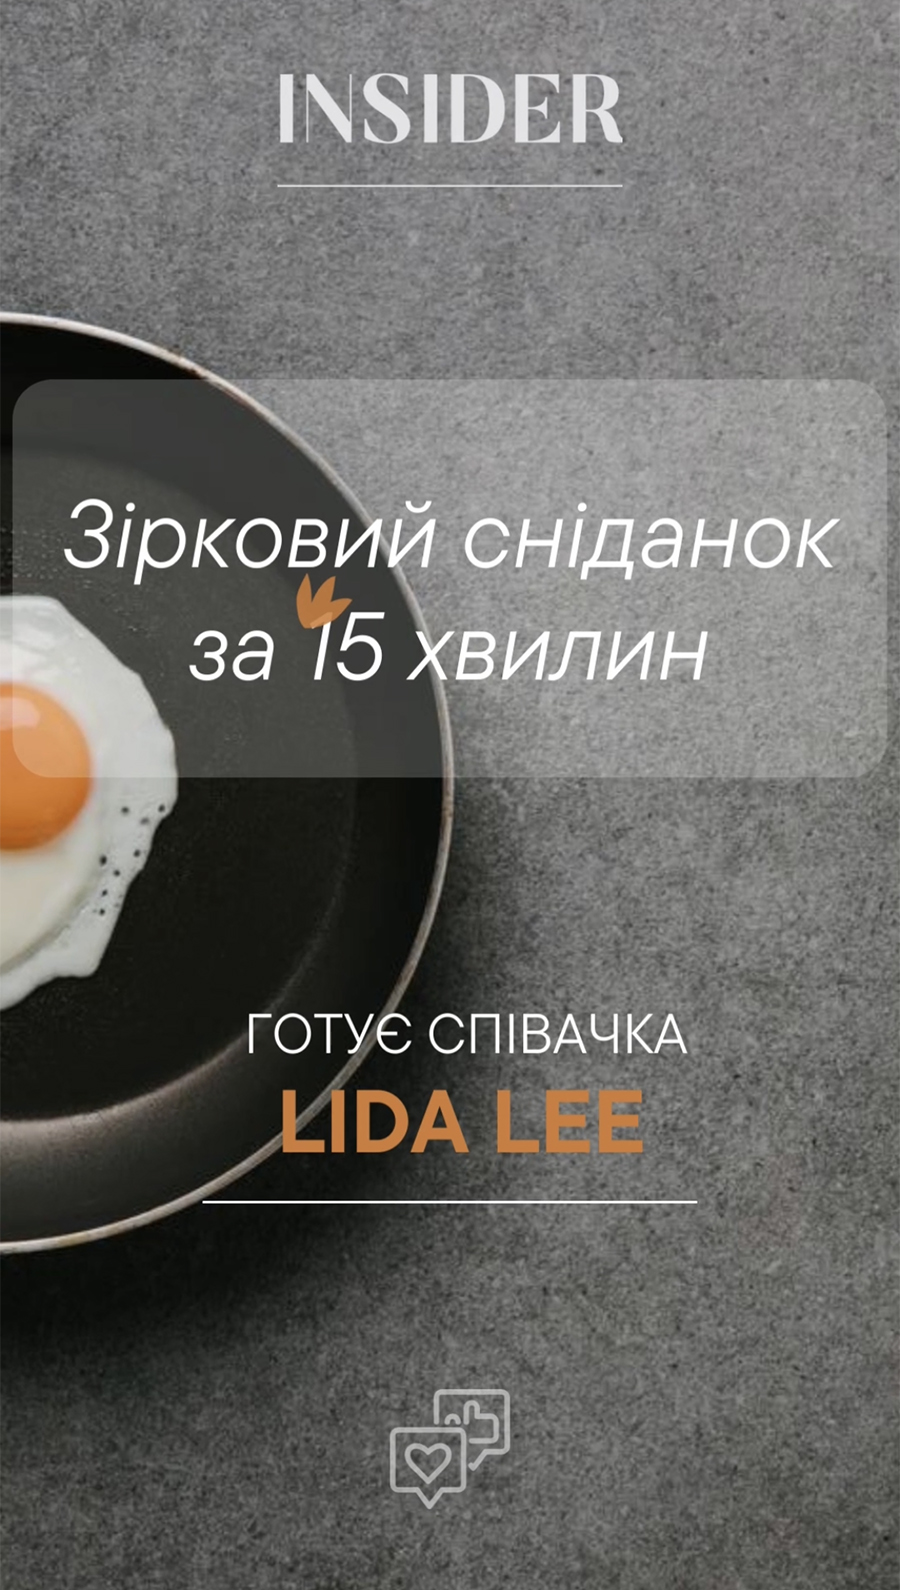 Звездный завтрак за 15 минут: готовит певица Lida Lee